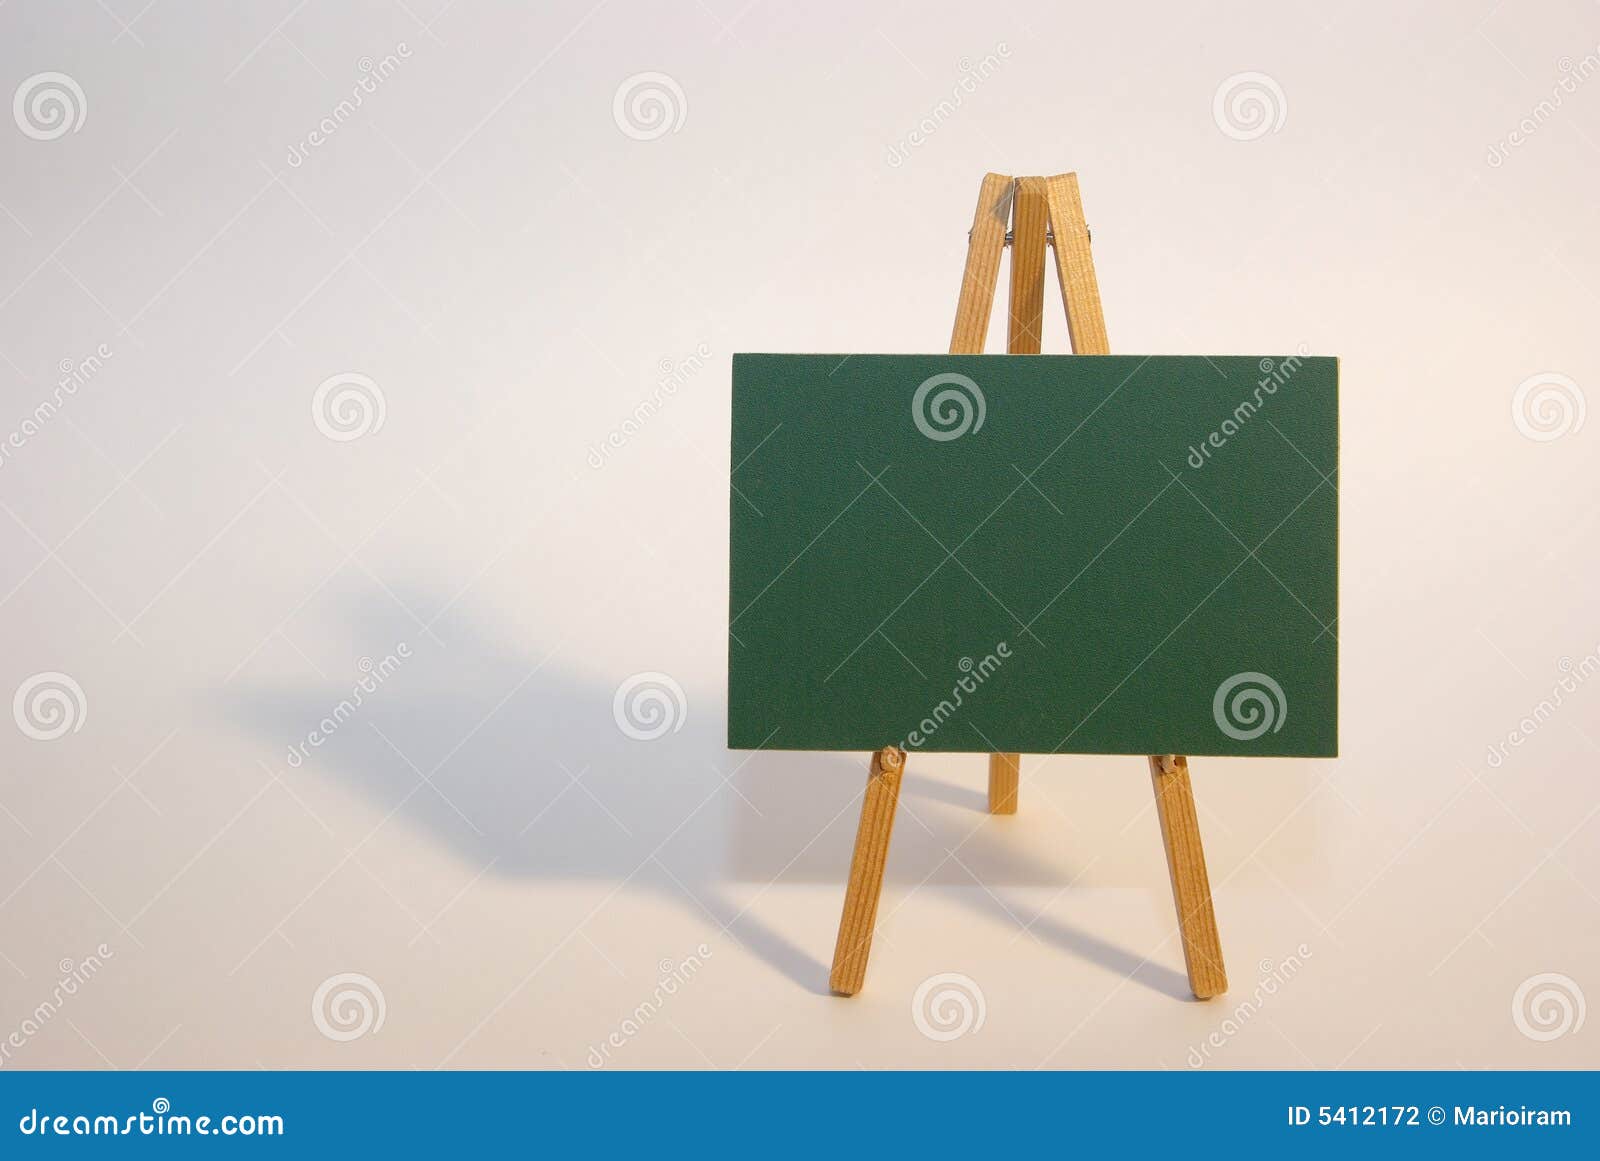 customizable blackboard